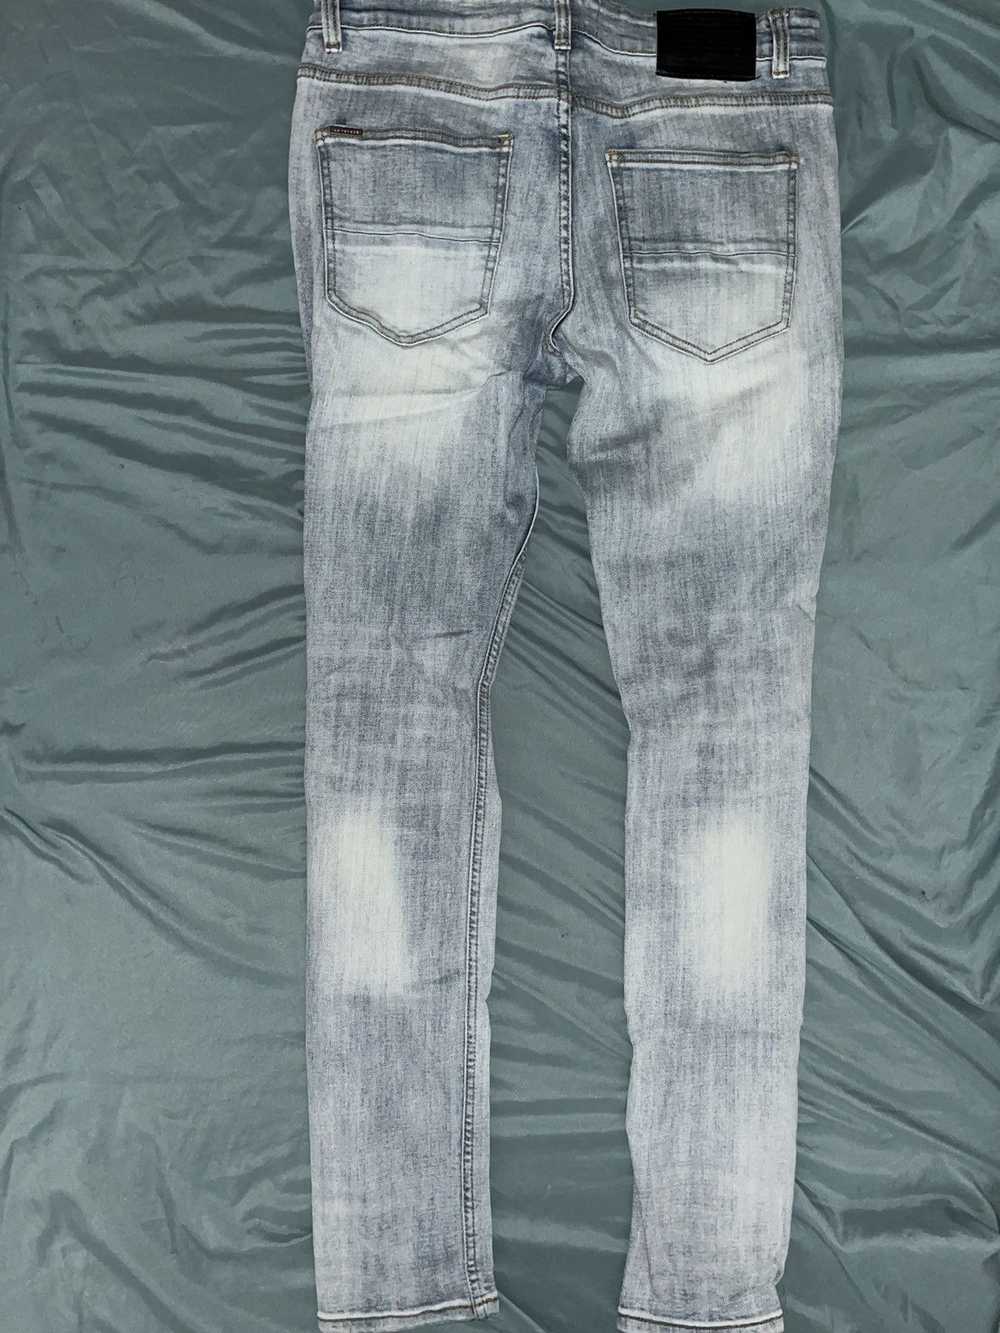 SERENEDE Light Blue Jeans - image 2